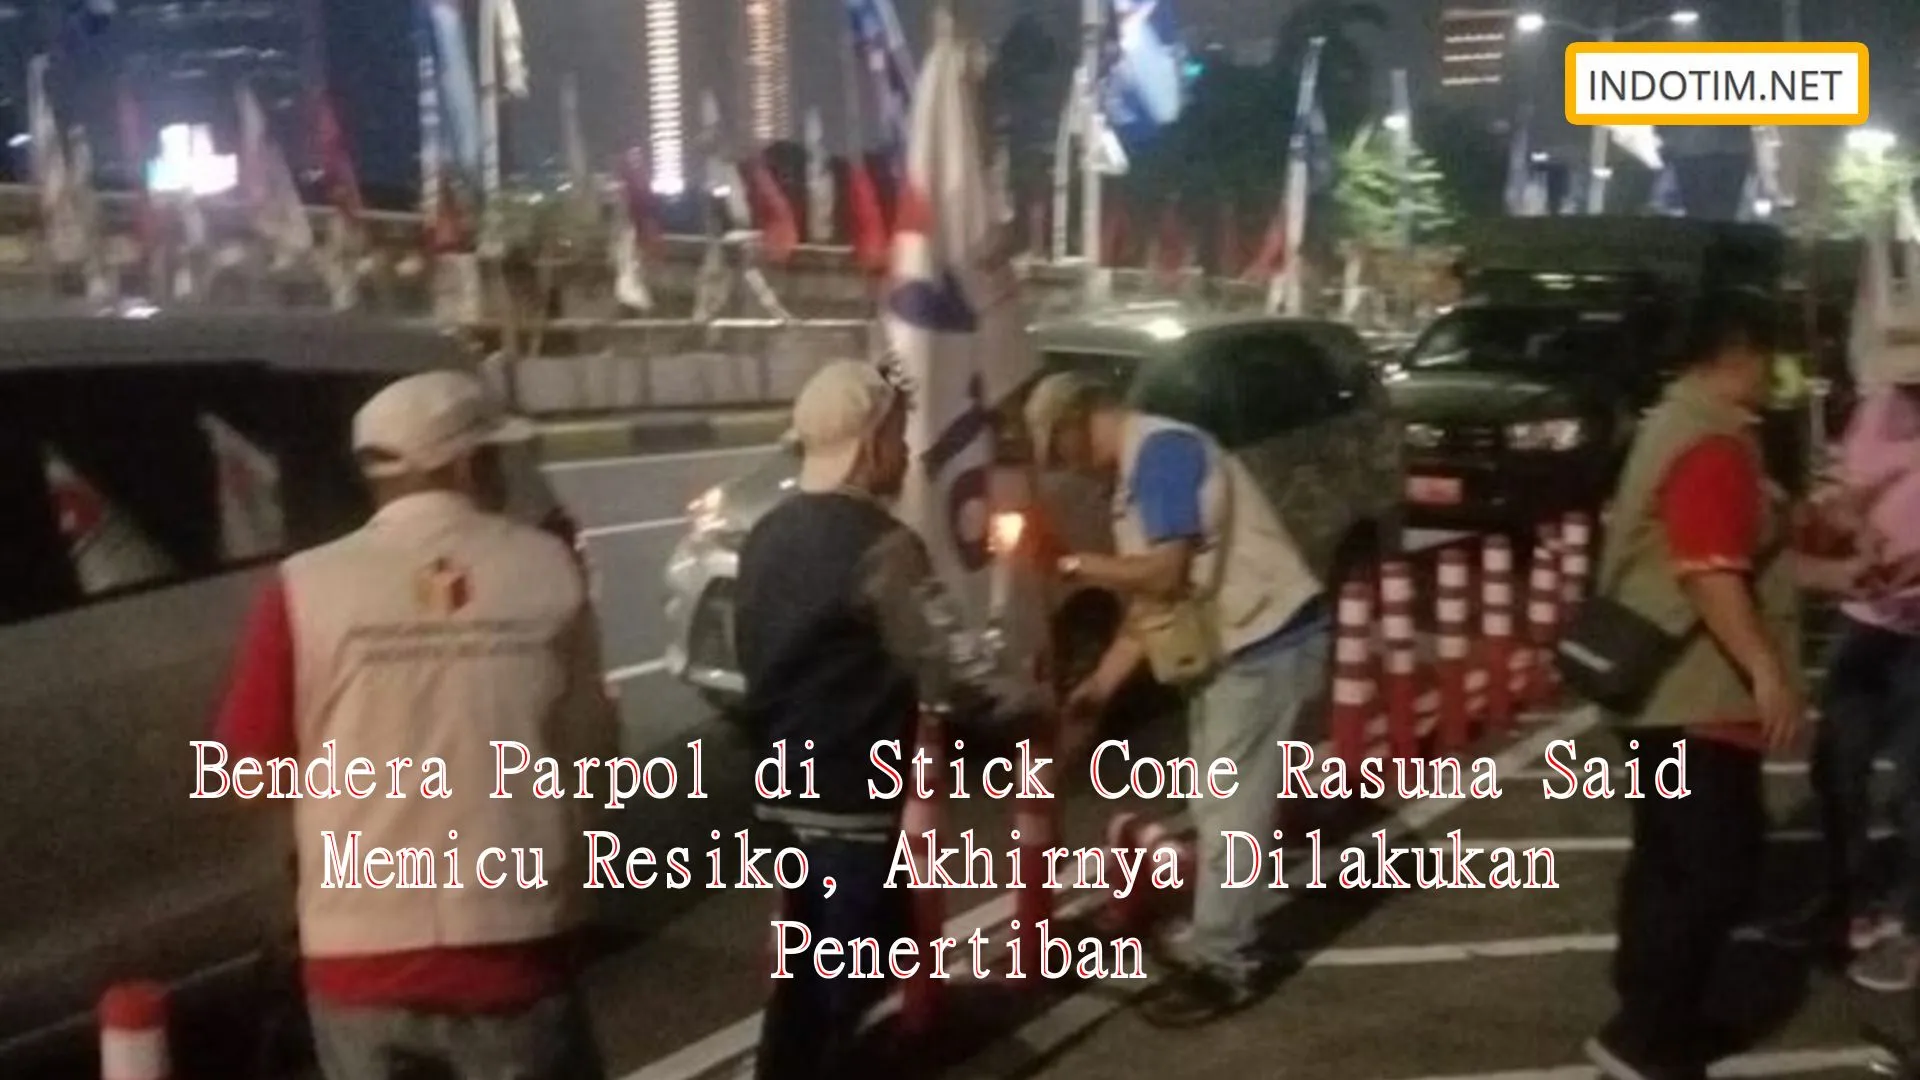 Bendera Parpol di Stick Cone Rasuna Said Memicu Resiko, Akhirnya Dilakukan Penertiban